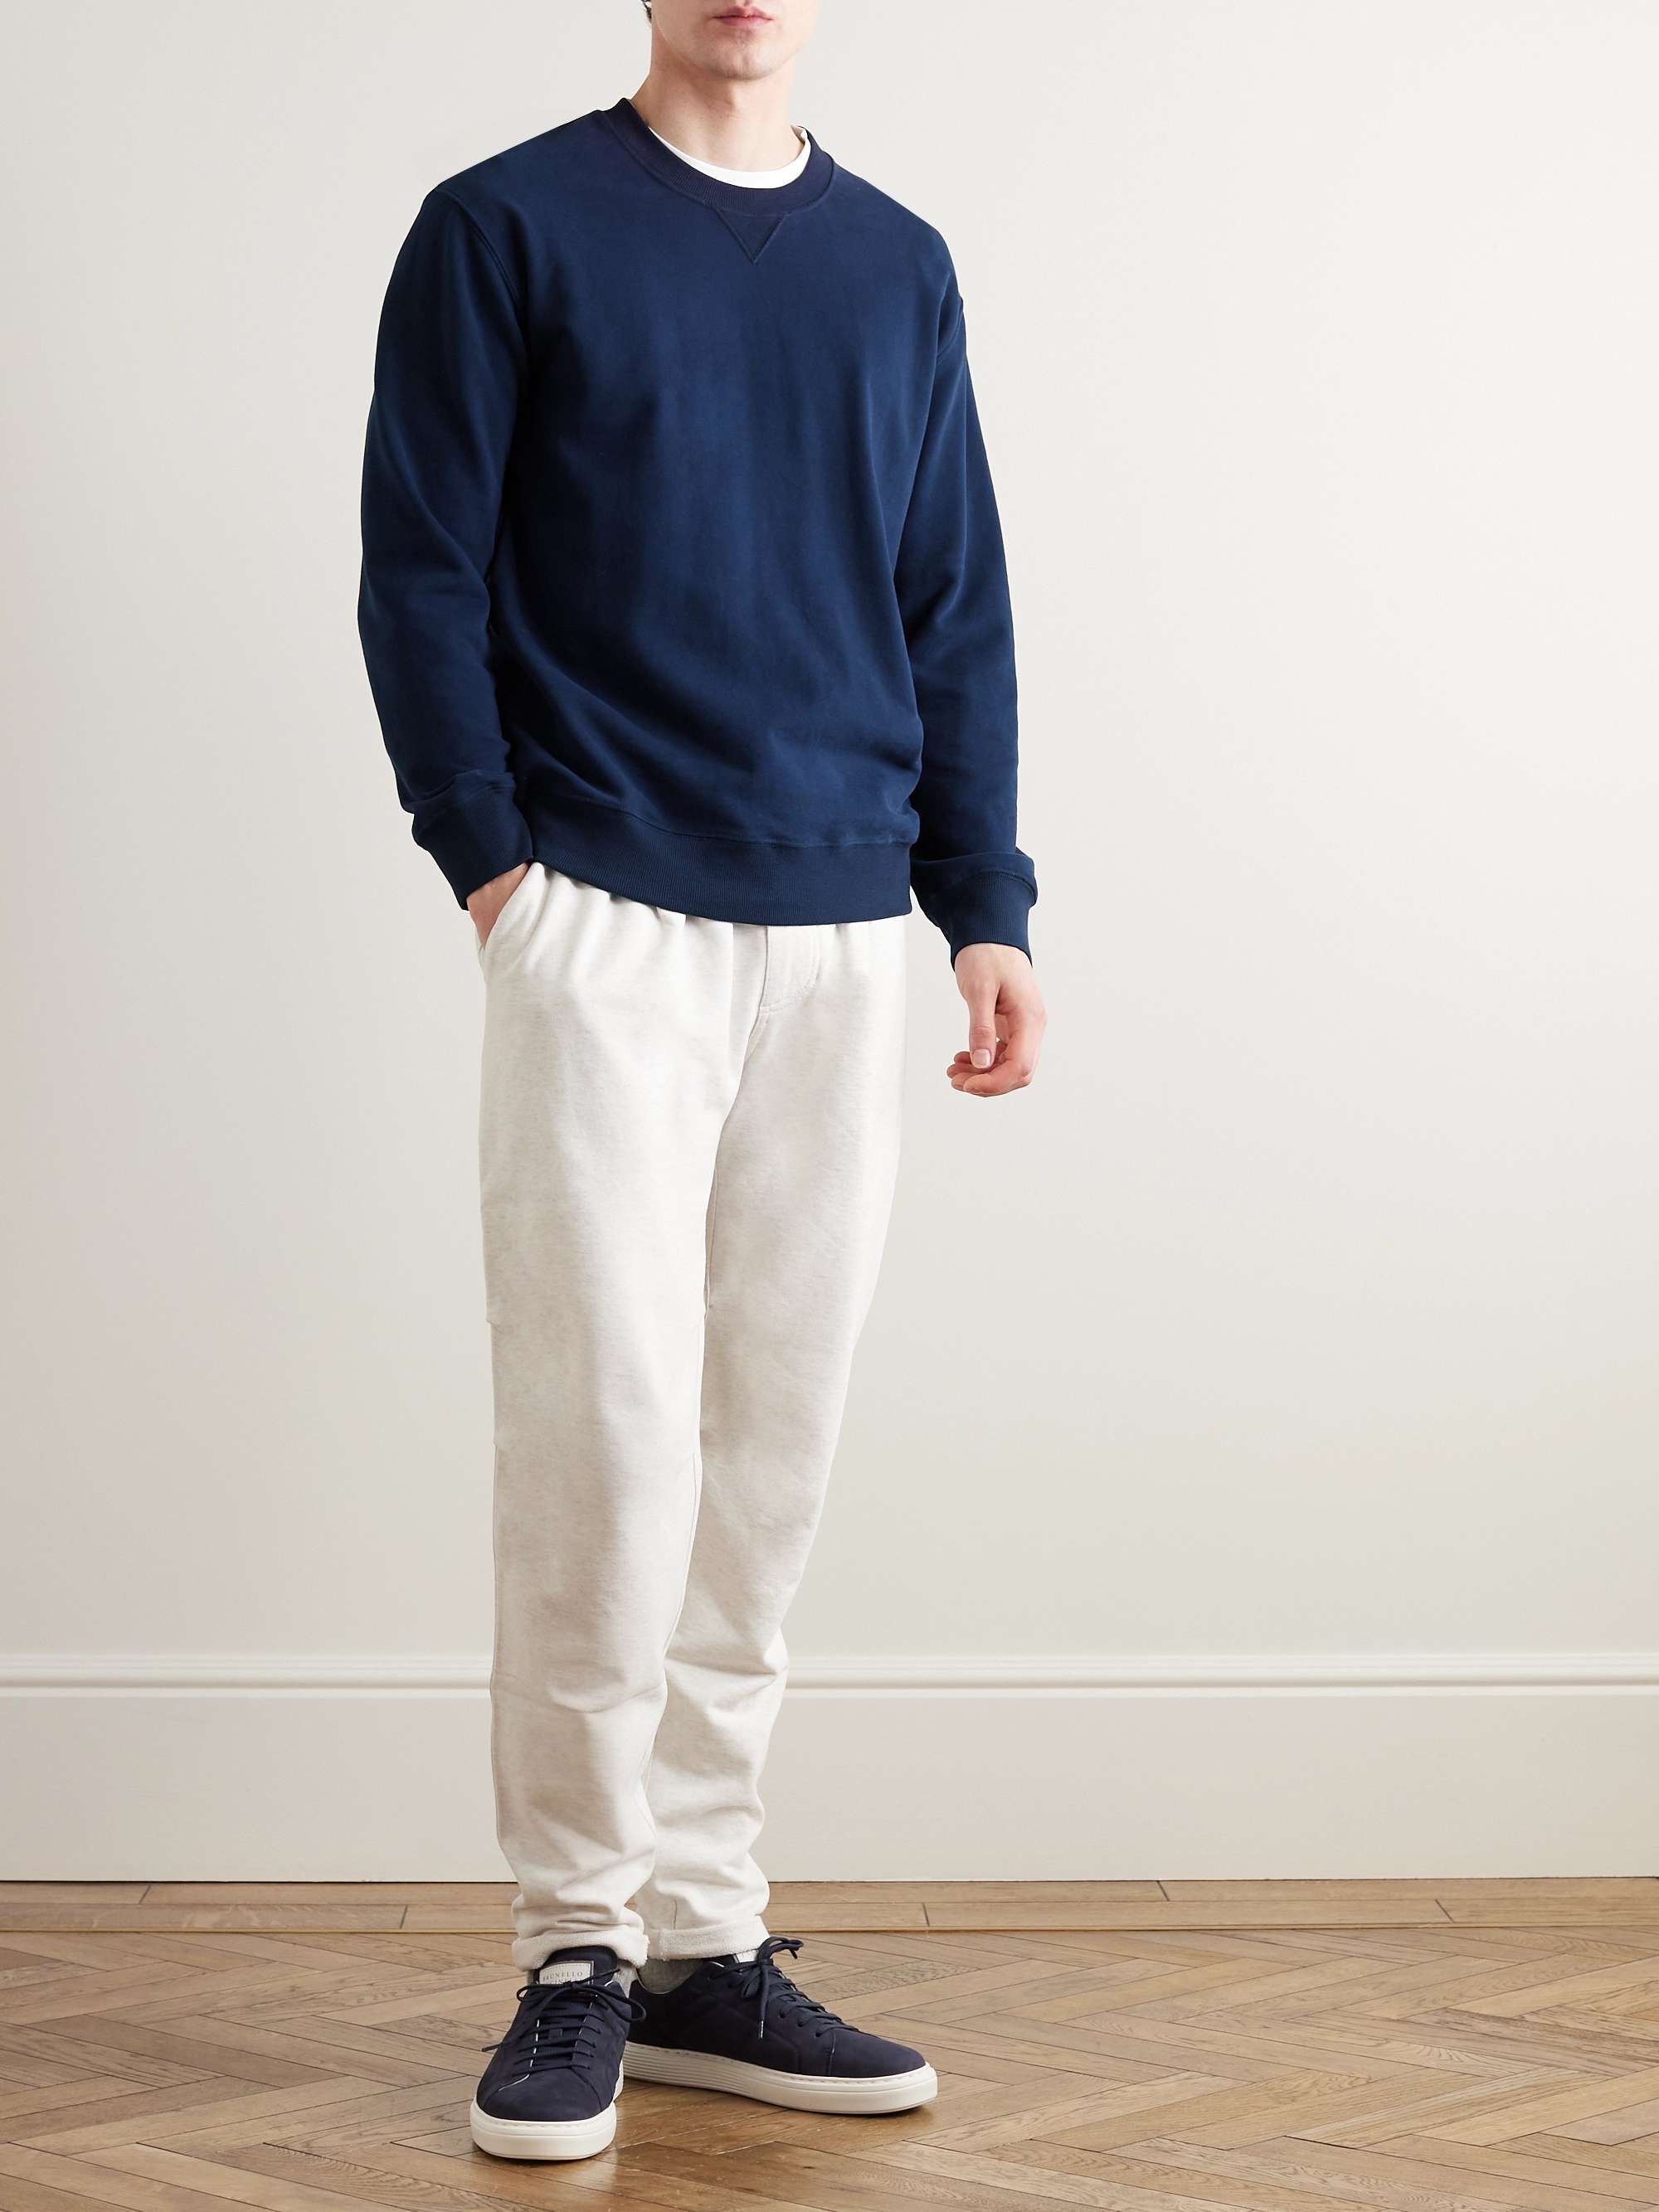 Brunello Cucinelli Cotton-jersey Zip-Up Sweatshirt - Men - Navy Sweats - S